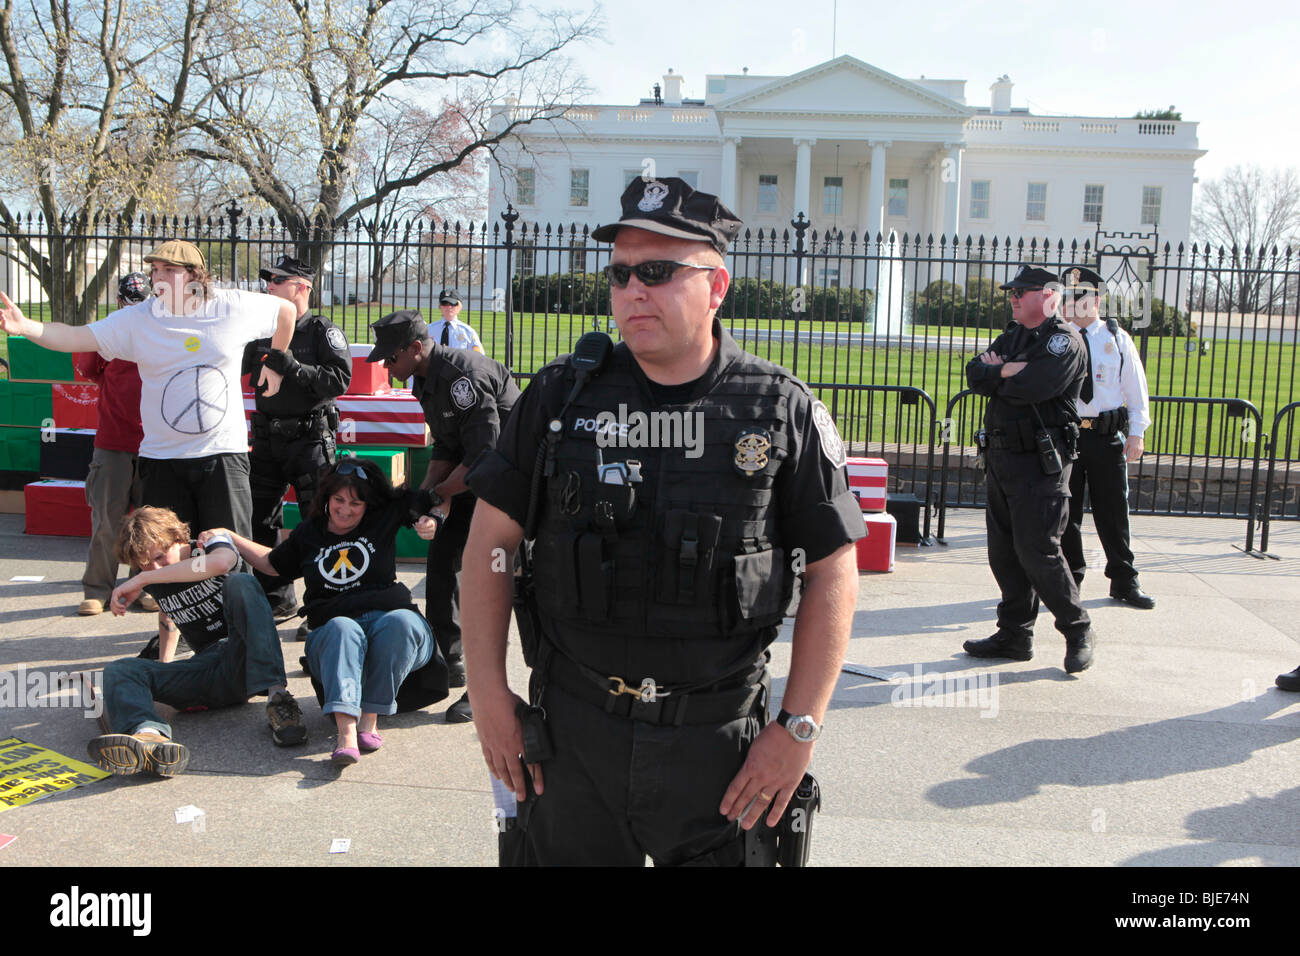 La guerre contre les manifestants sont arrêtés par la police près de Maison Blanche. Manifestation anti-guerre. Marche sur Washington. 20 mars, 2010 Banque D'Images